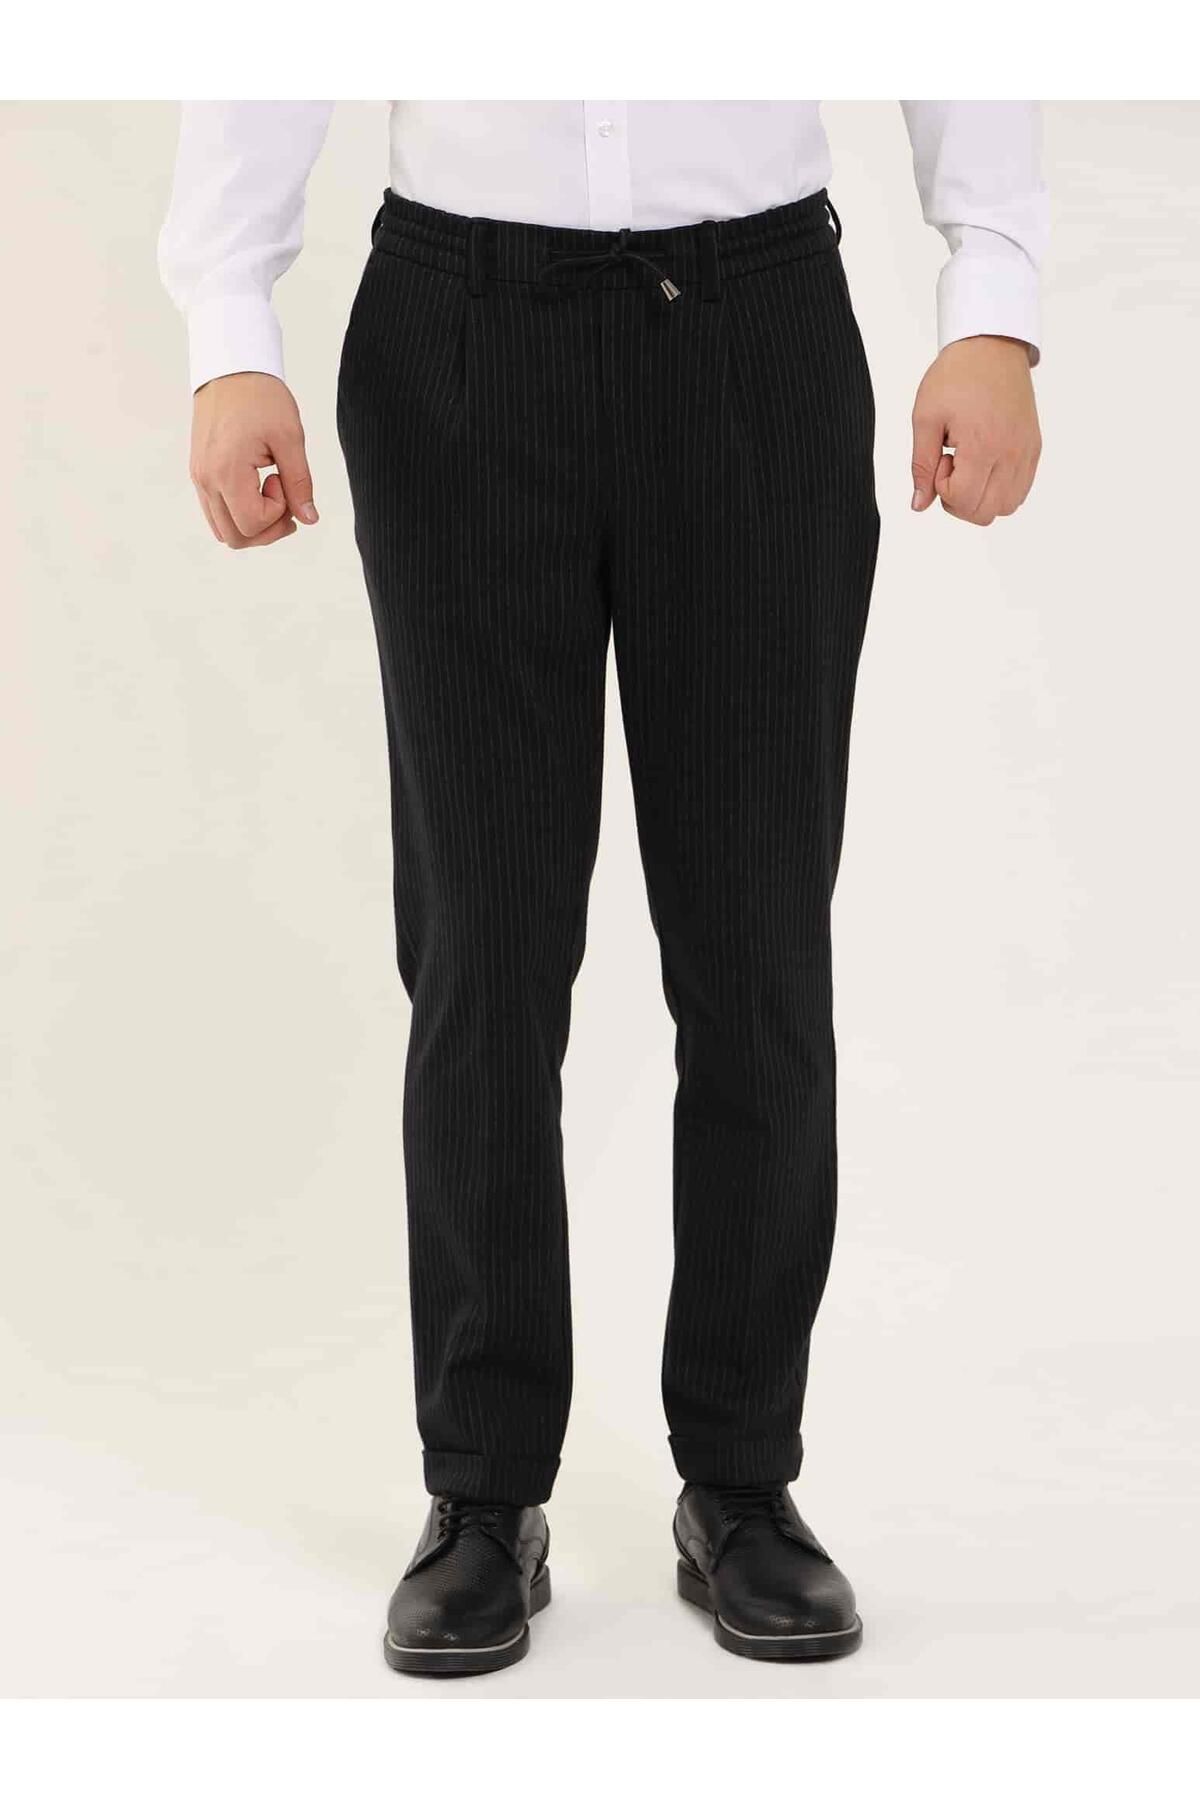 Dufy Siyah Erkek Slim Fit Çizgili Klasik Pantolon - 97676